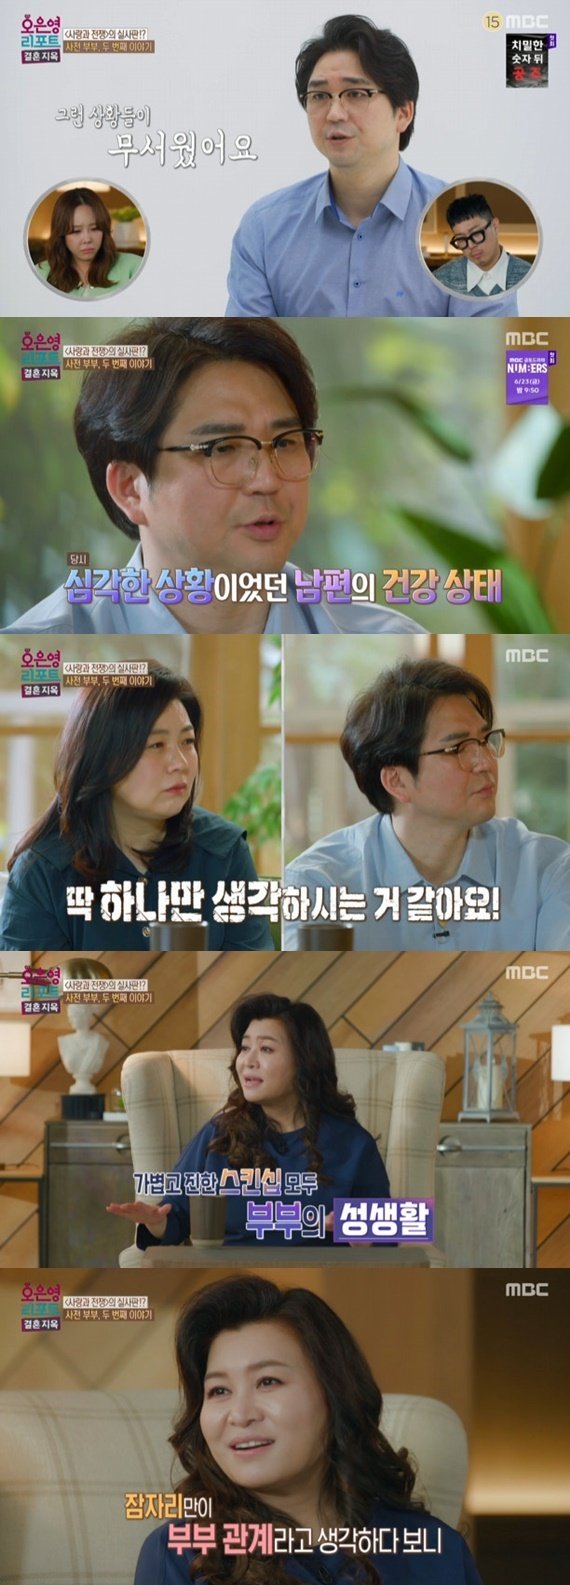 오은영, 홍승범·권영경에 "잠자리만 부부성생활 아냐" 일갈